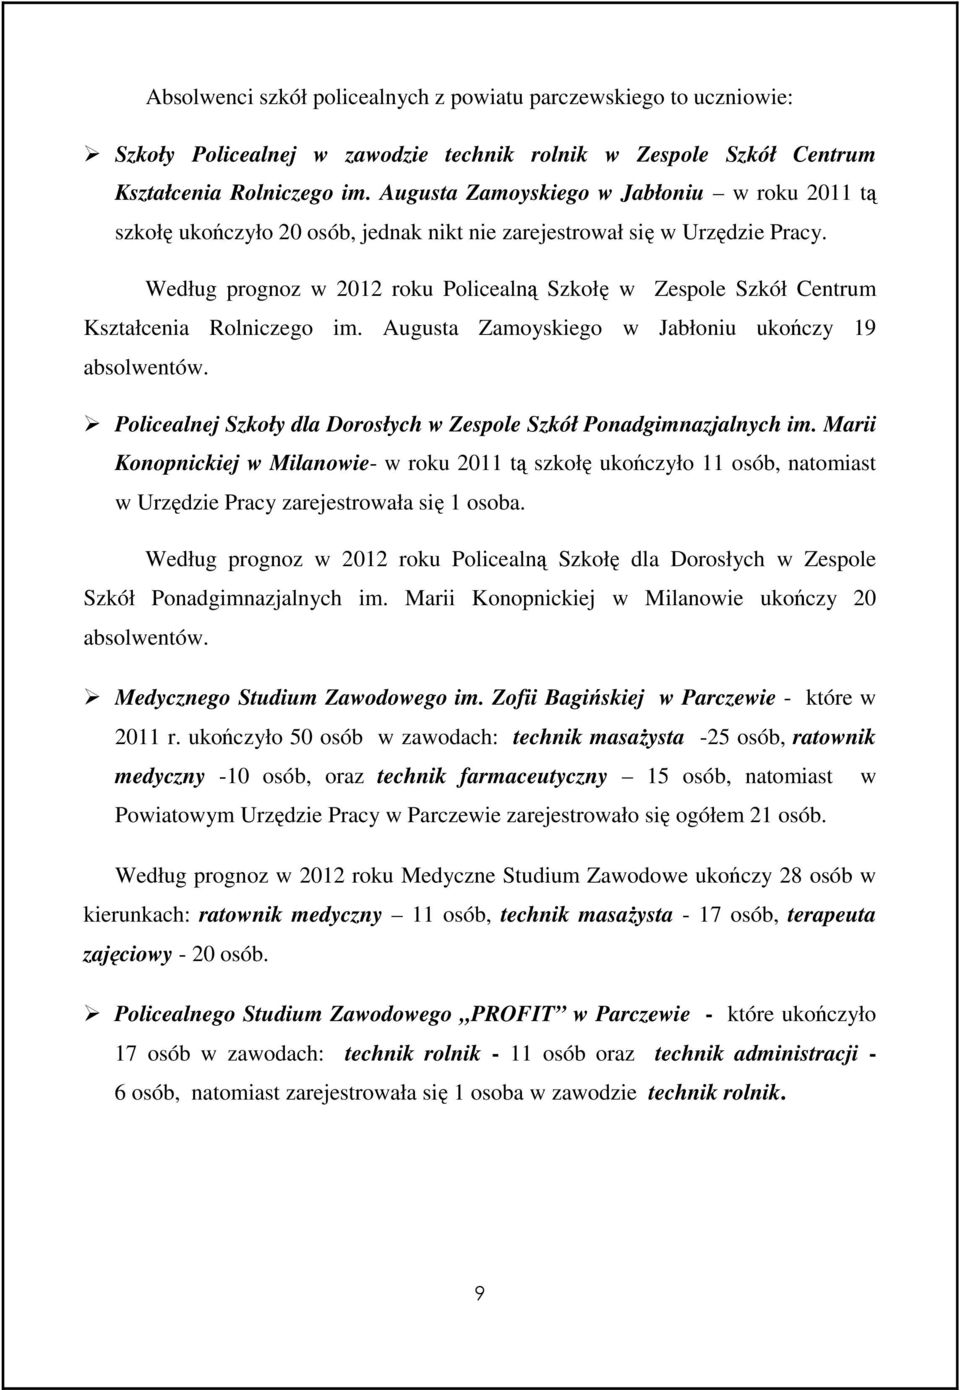 Według prognoz w 2012 roku Policealną Szkołę w Zespole Szkół Centrum Kształcenia Rolniczego im. Augusta Zamoyskiego w Jabłoniu ukończy 19 absolwentów.